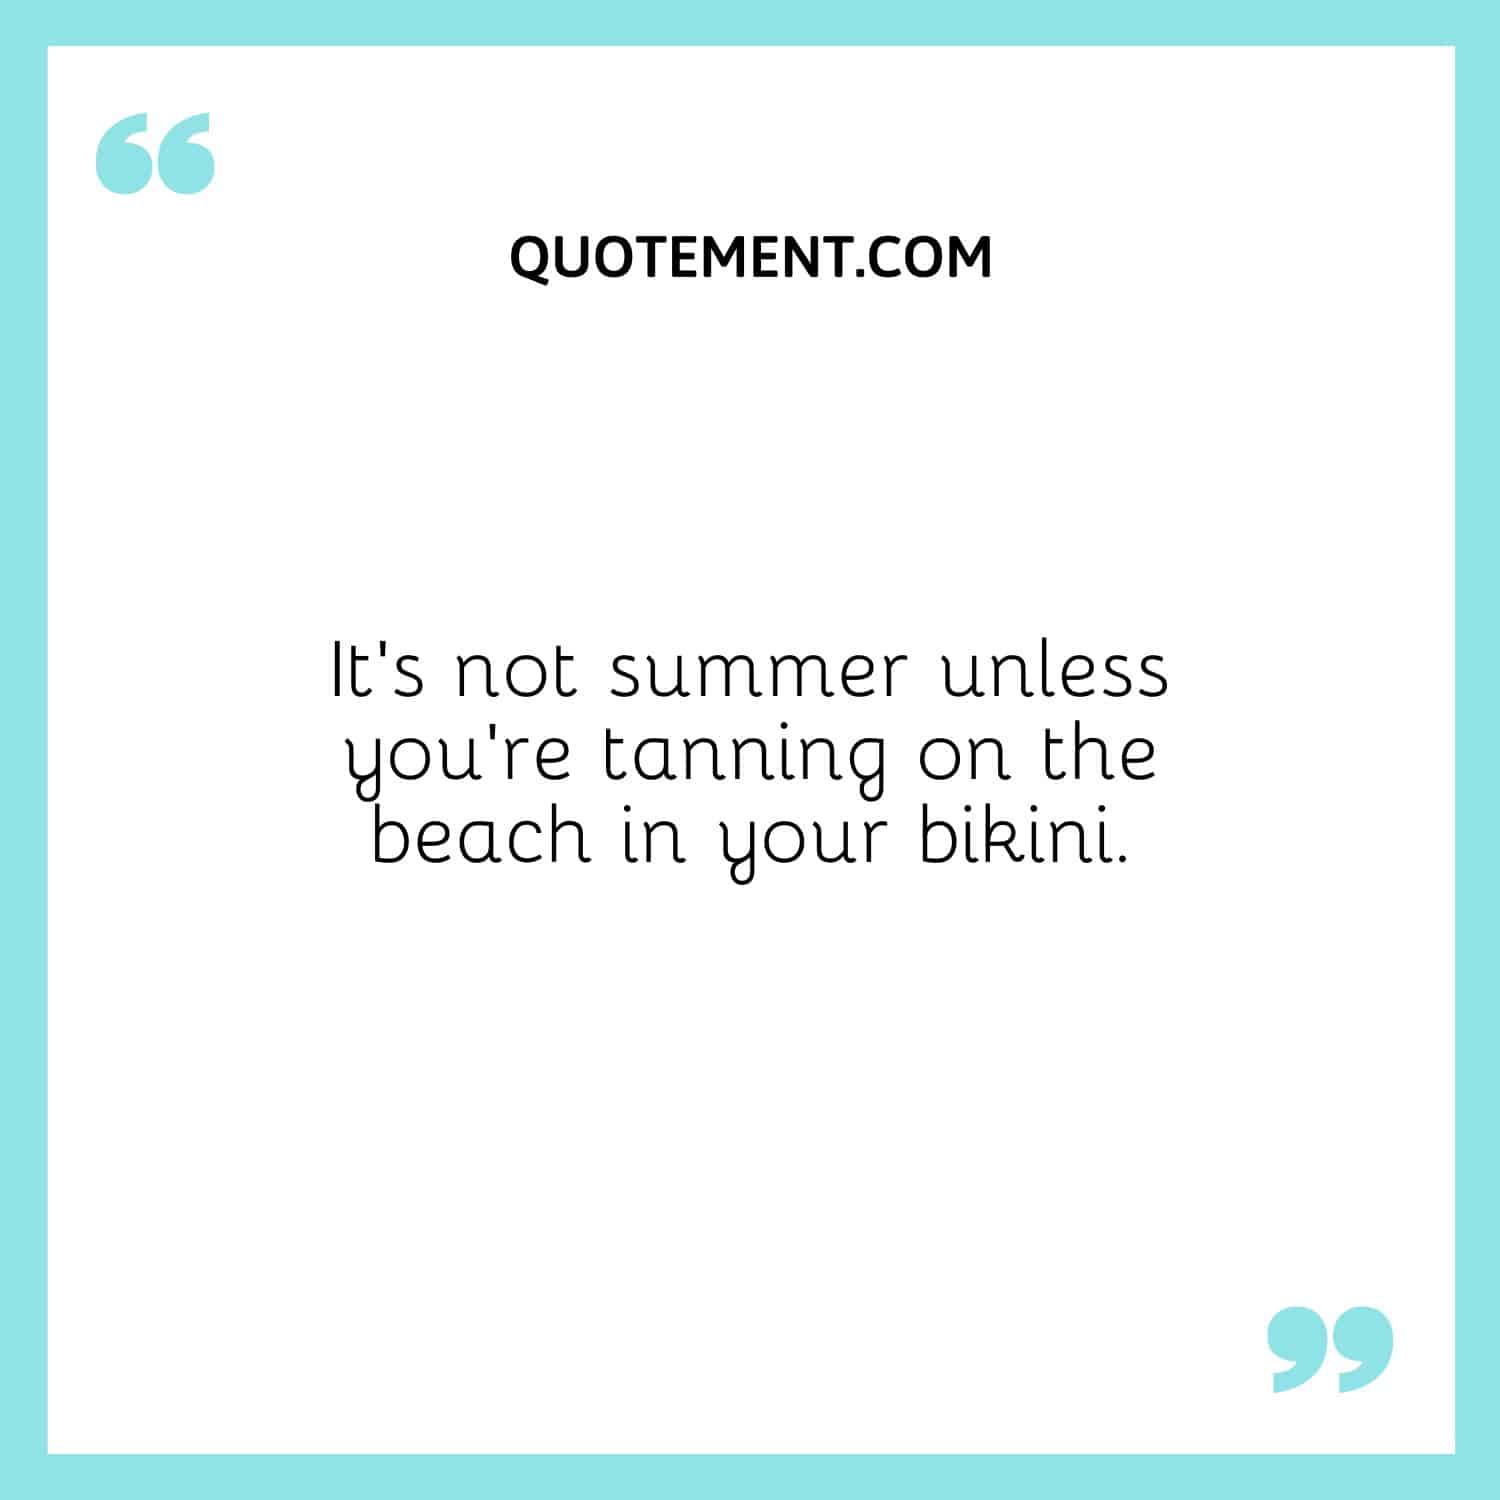 No es verano si no estás bronceándote en la playa en bikini.